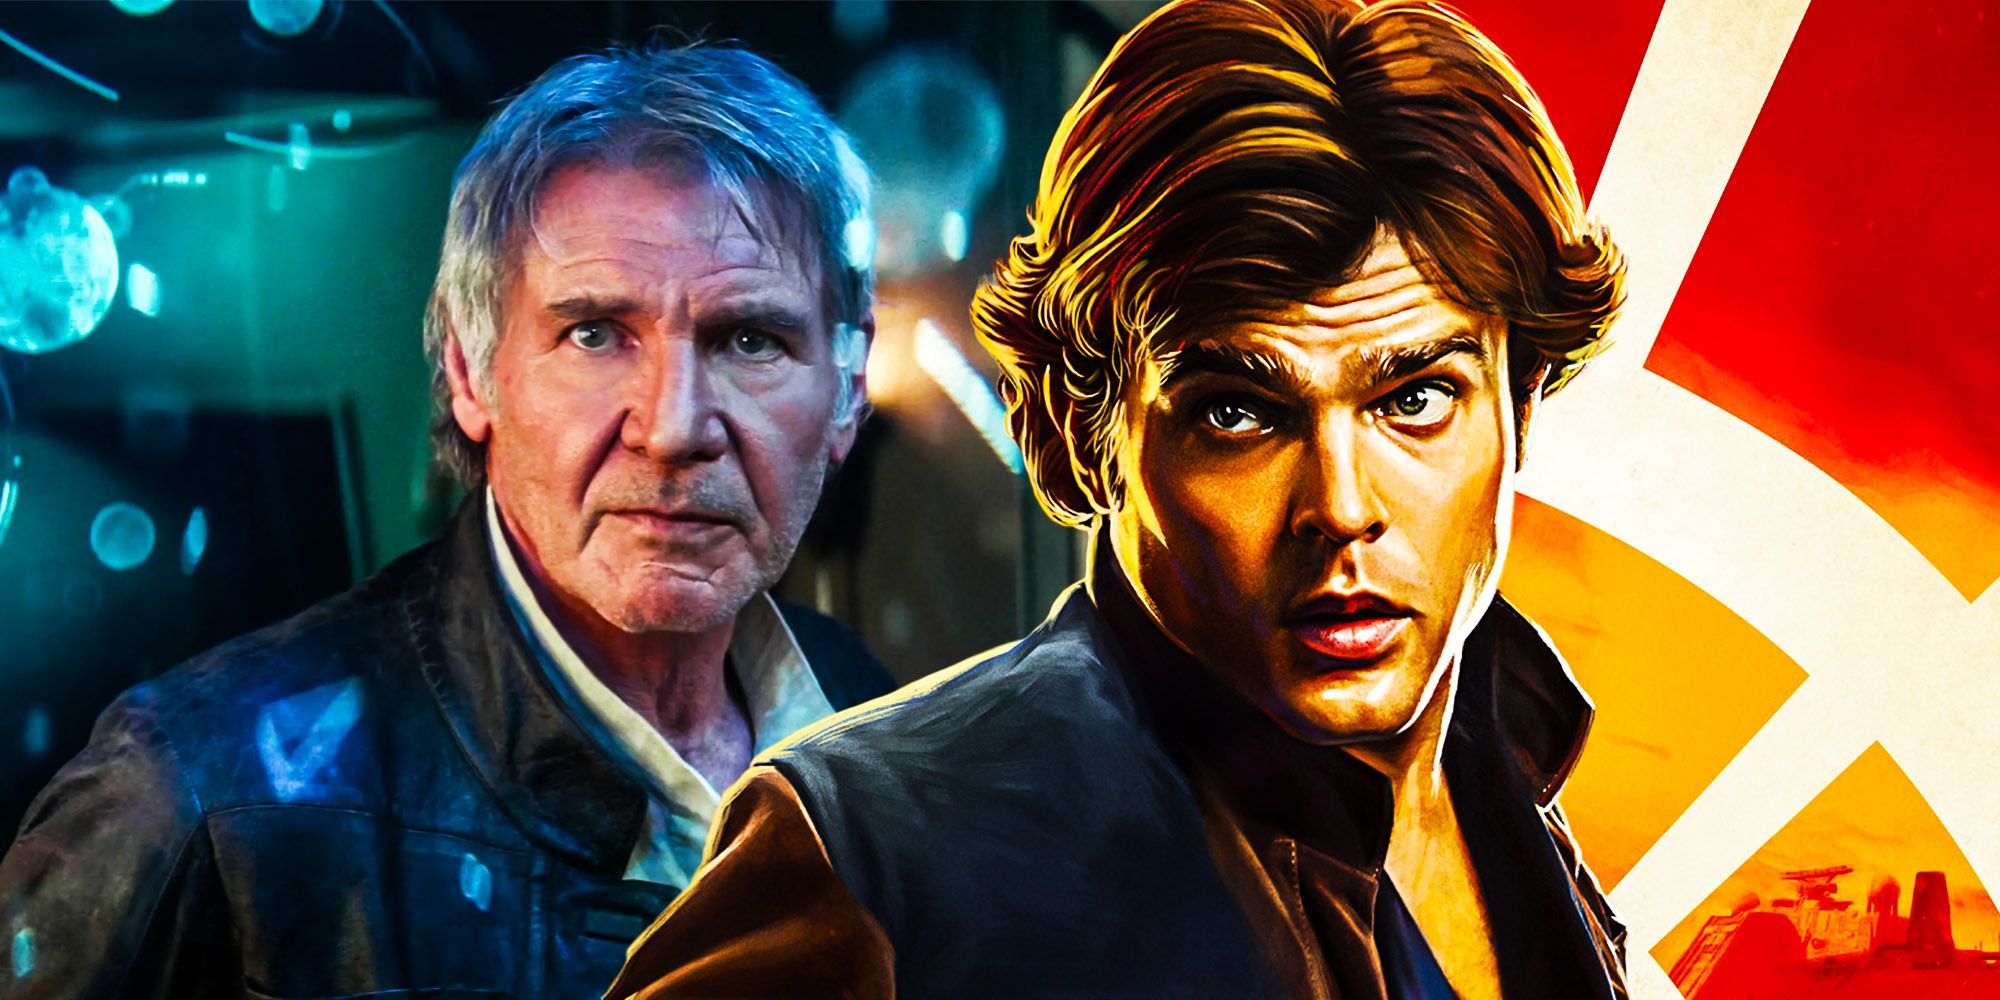 Star wars should bring back Alden Han Solo Not Harrison fords